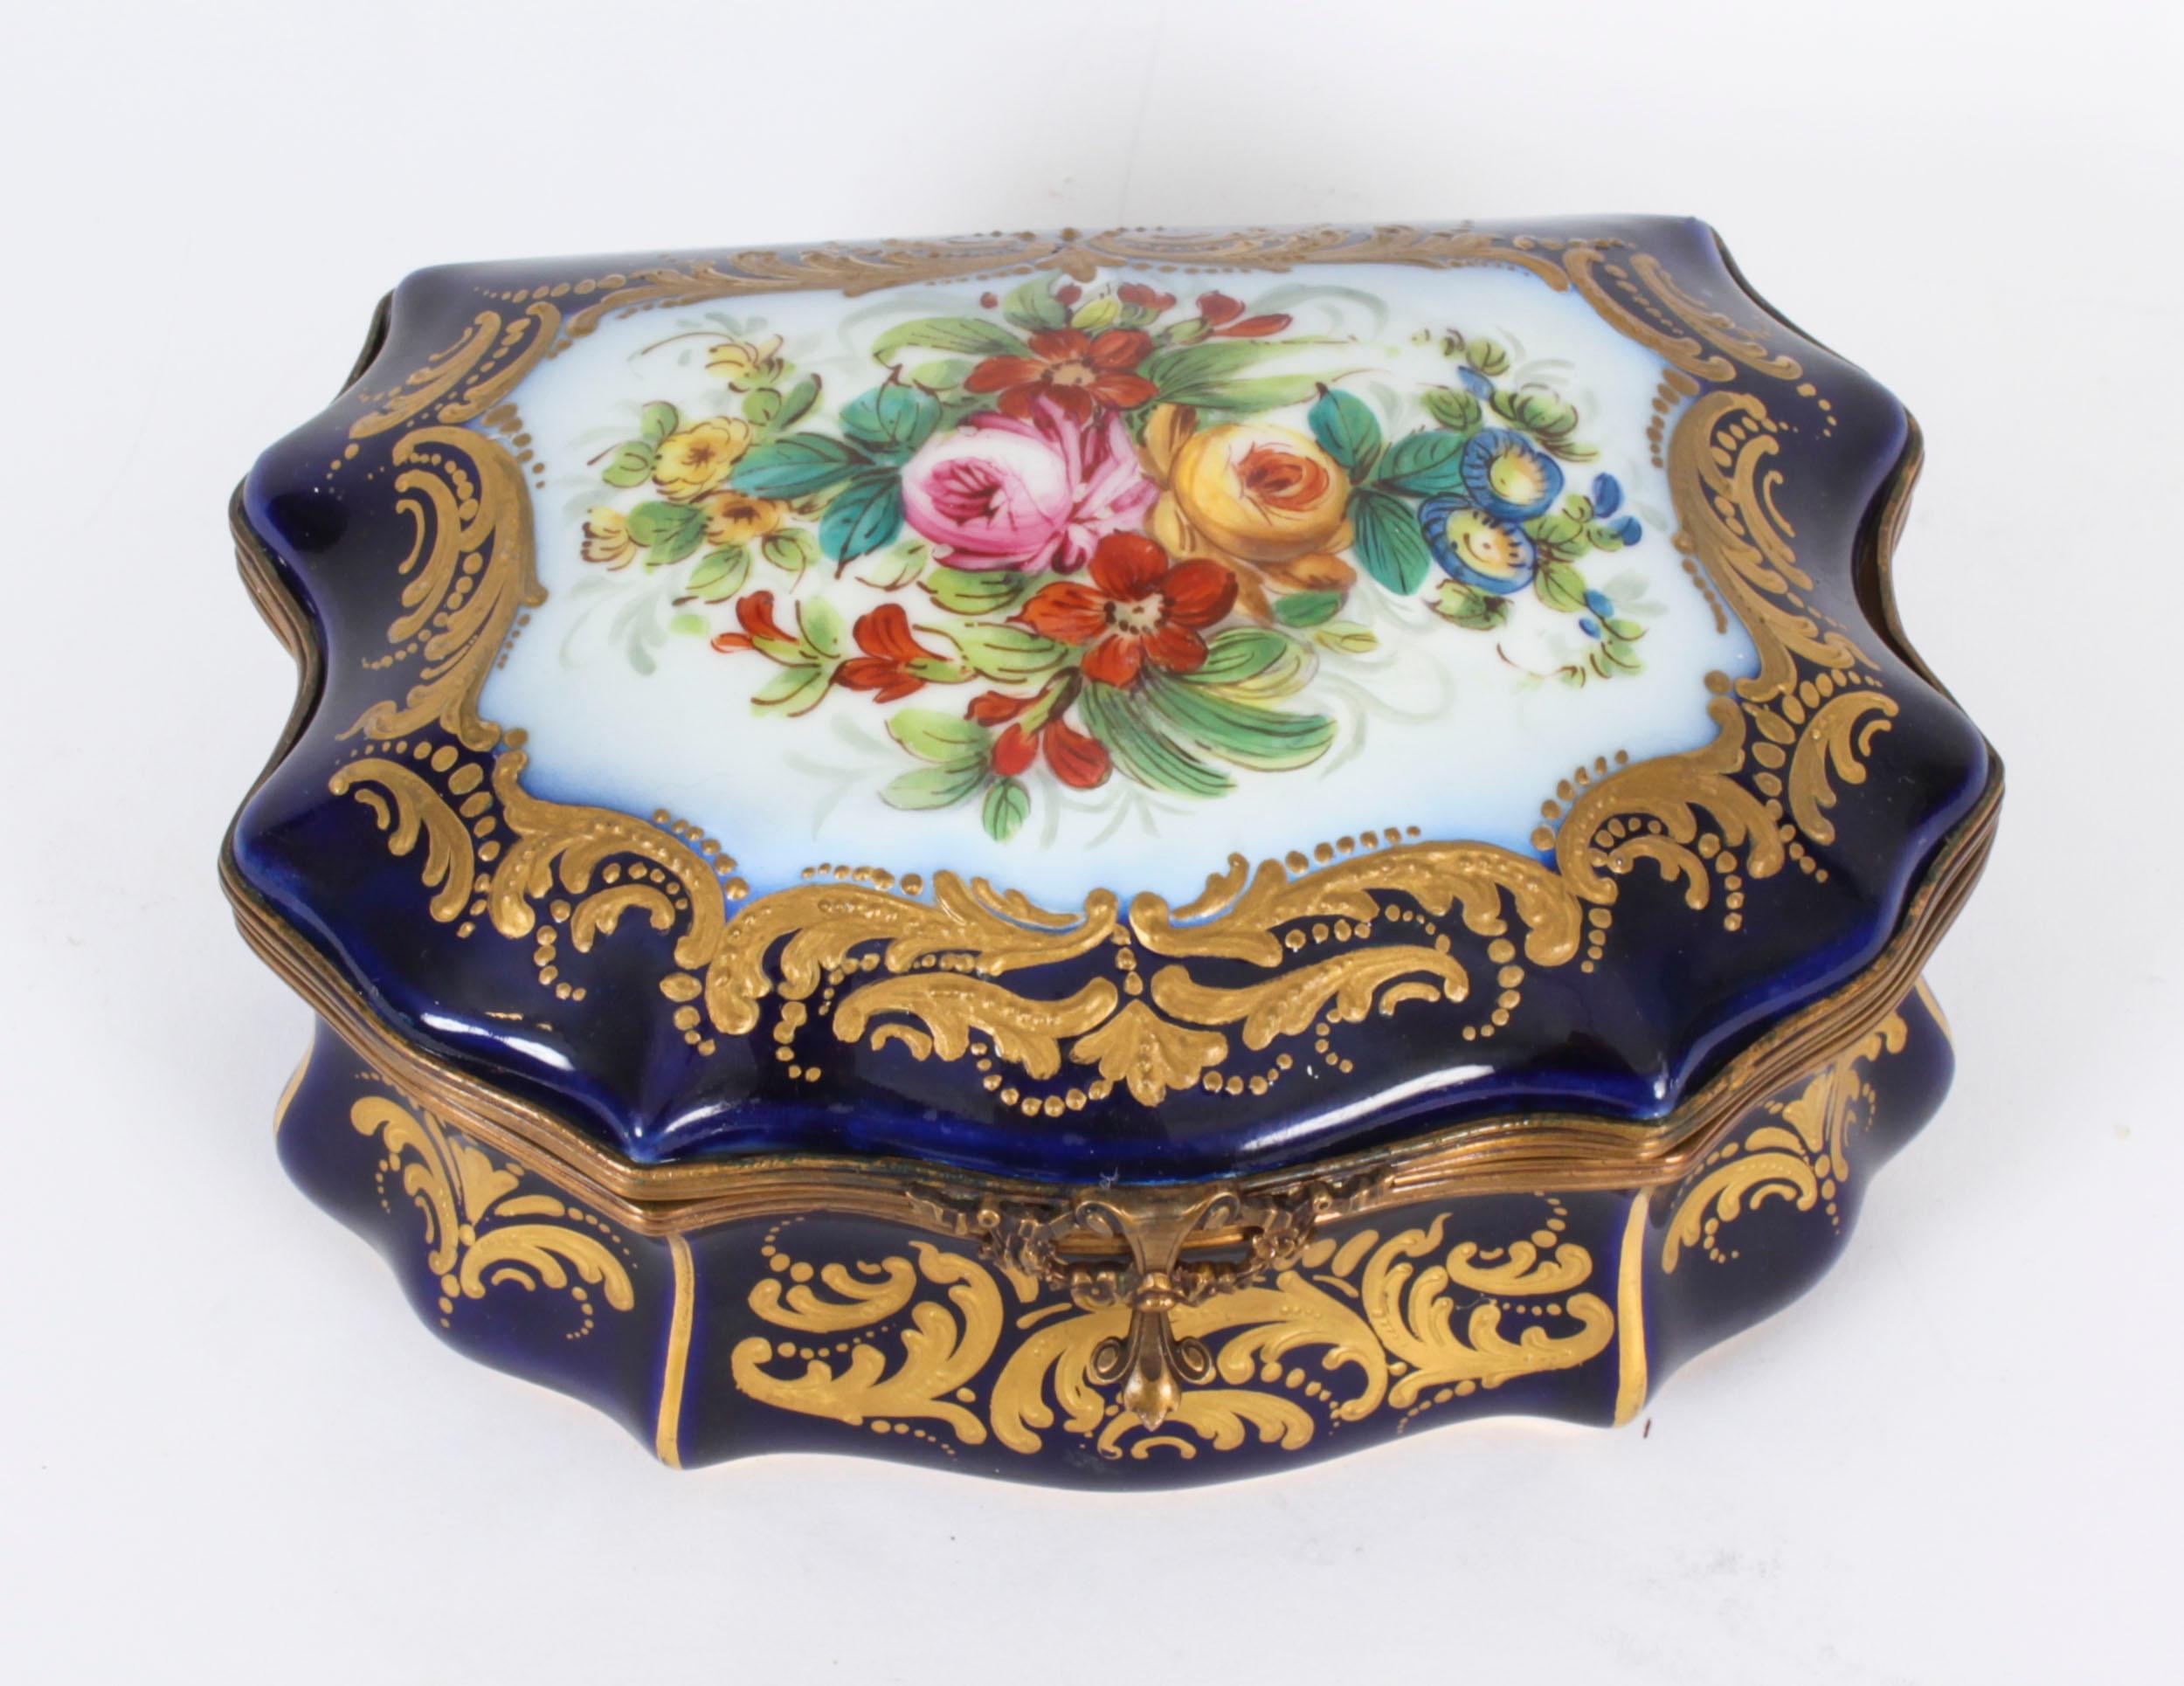 Dies ist eine fabelhafte antike Französisch Sèvres Porzellan Kobaltblau Ormolu montiert  Schatulle, ca. 1880 datiert.

Der geformte Scharnierdeckel ist mit einer handgemalten Blumengirlande in einer reich vergoldeten Bordüre verziert, die Vorder-